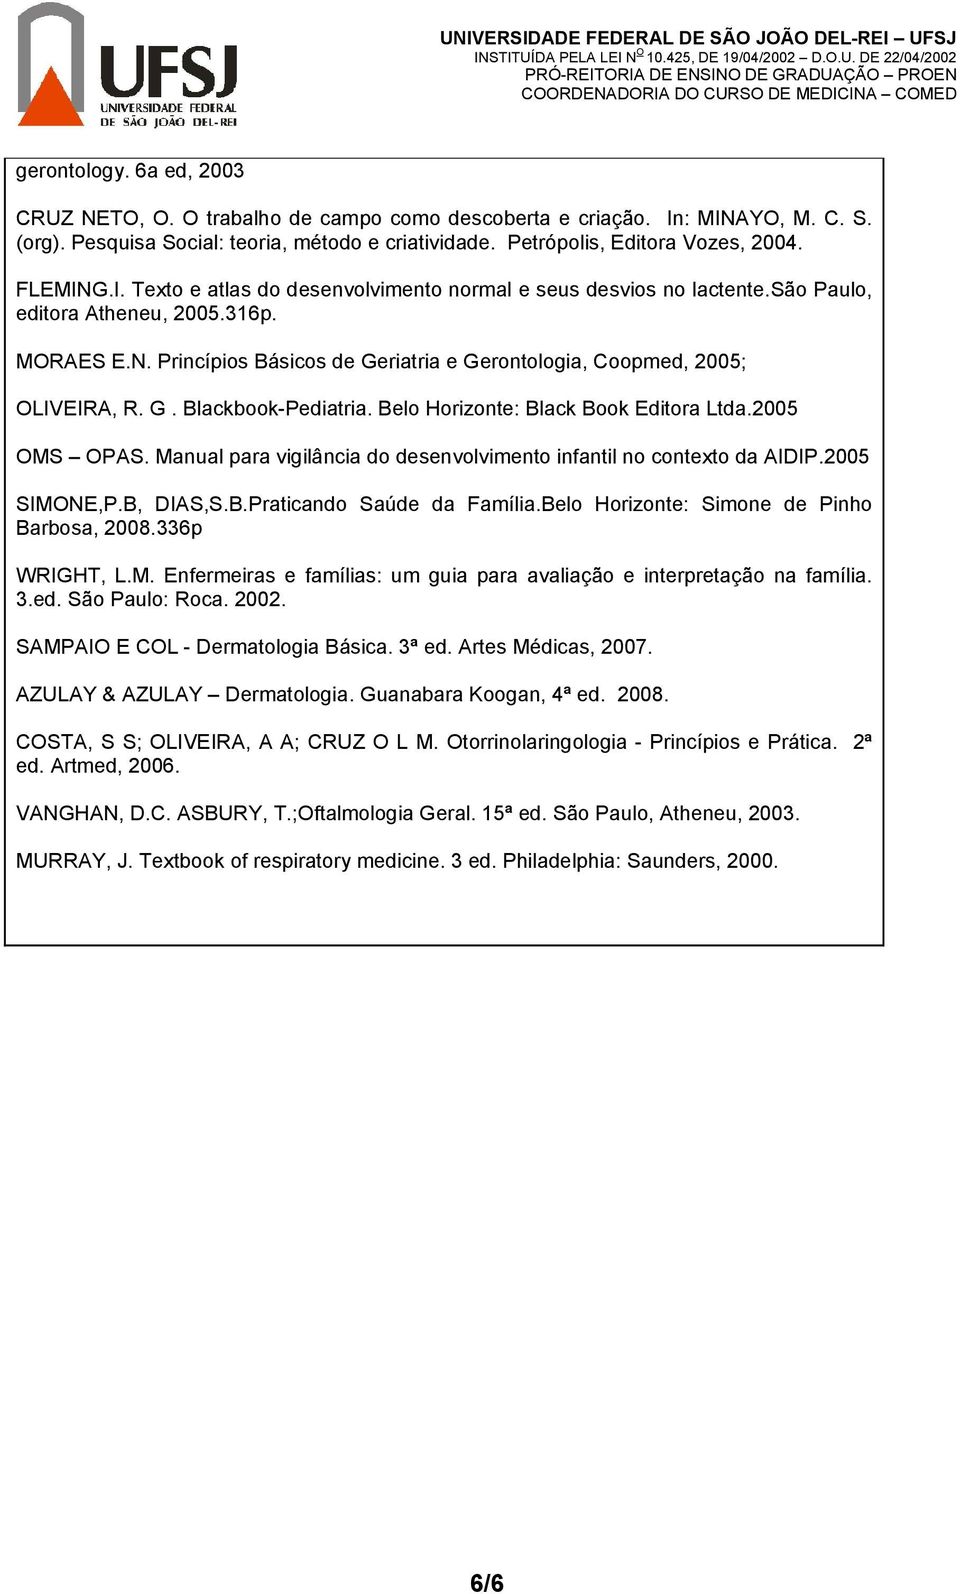 G. Blackbook-Pediatria. Belo Horizonte: Black Book Editora Ltda.2005 OMS OPAS. Manual para vigilância do desenvolvimento infantil no contexto da AIDIP.2005 SIMONE,P.B, DIAS,S.B.Praticando Saúde da Família.